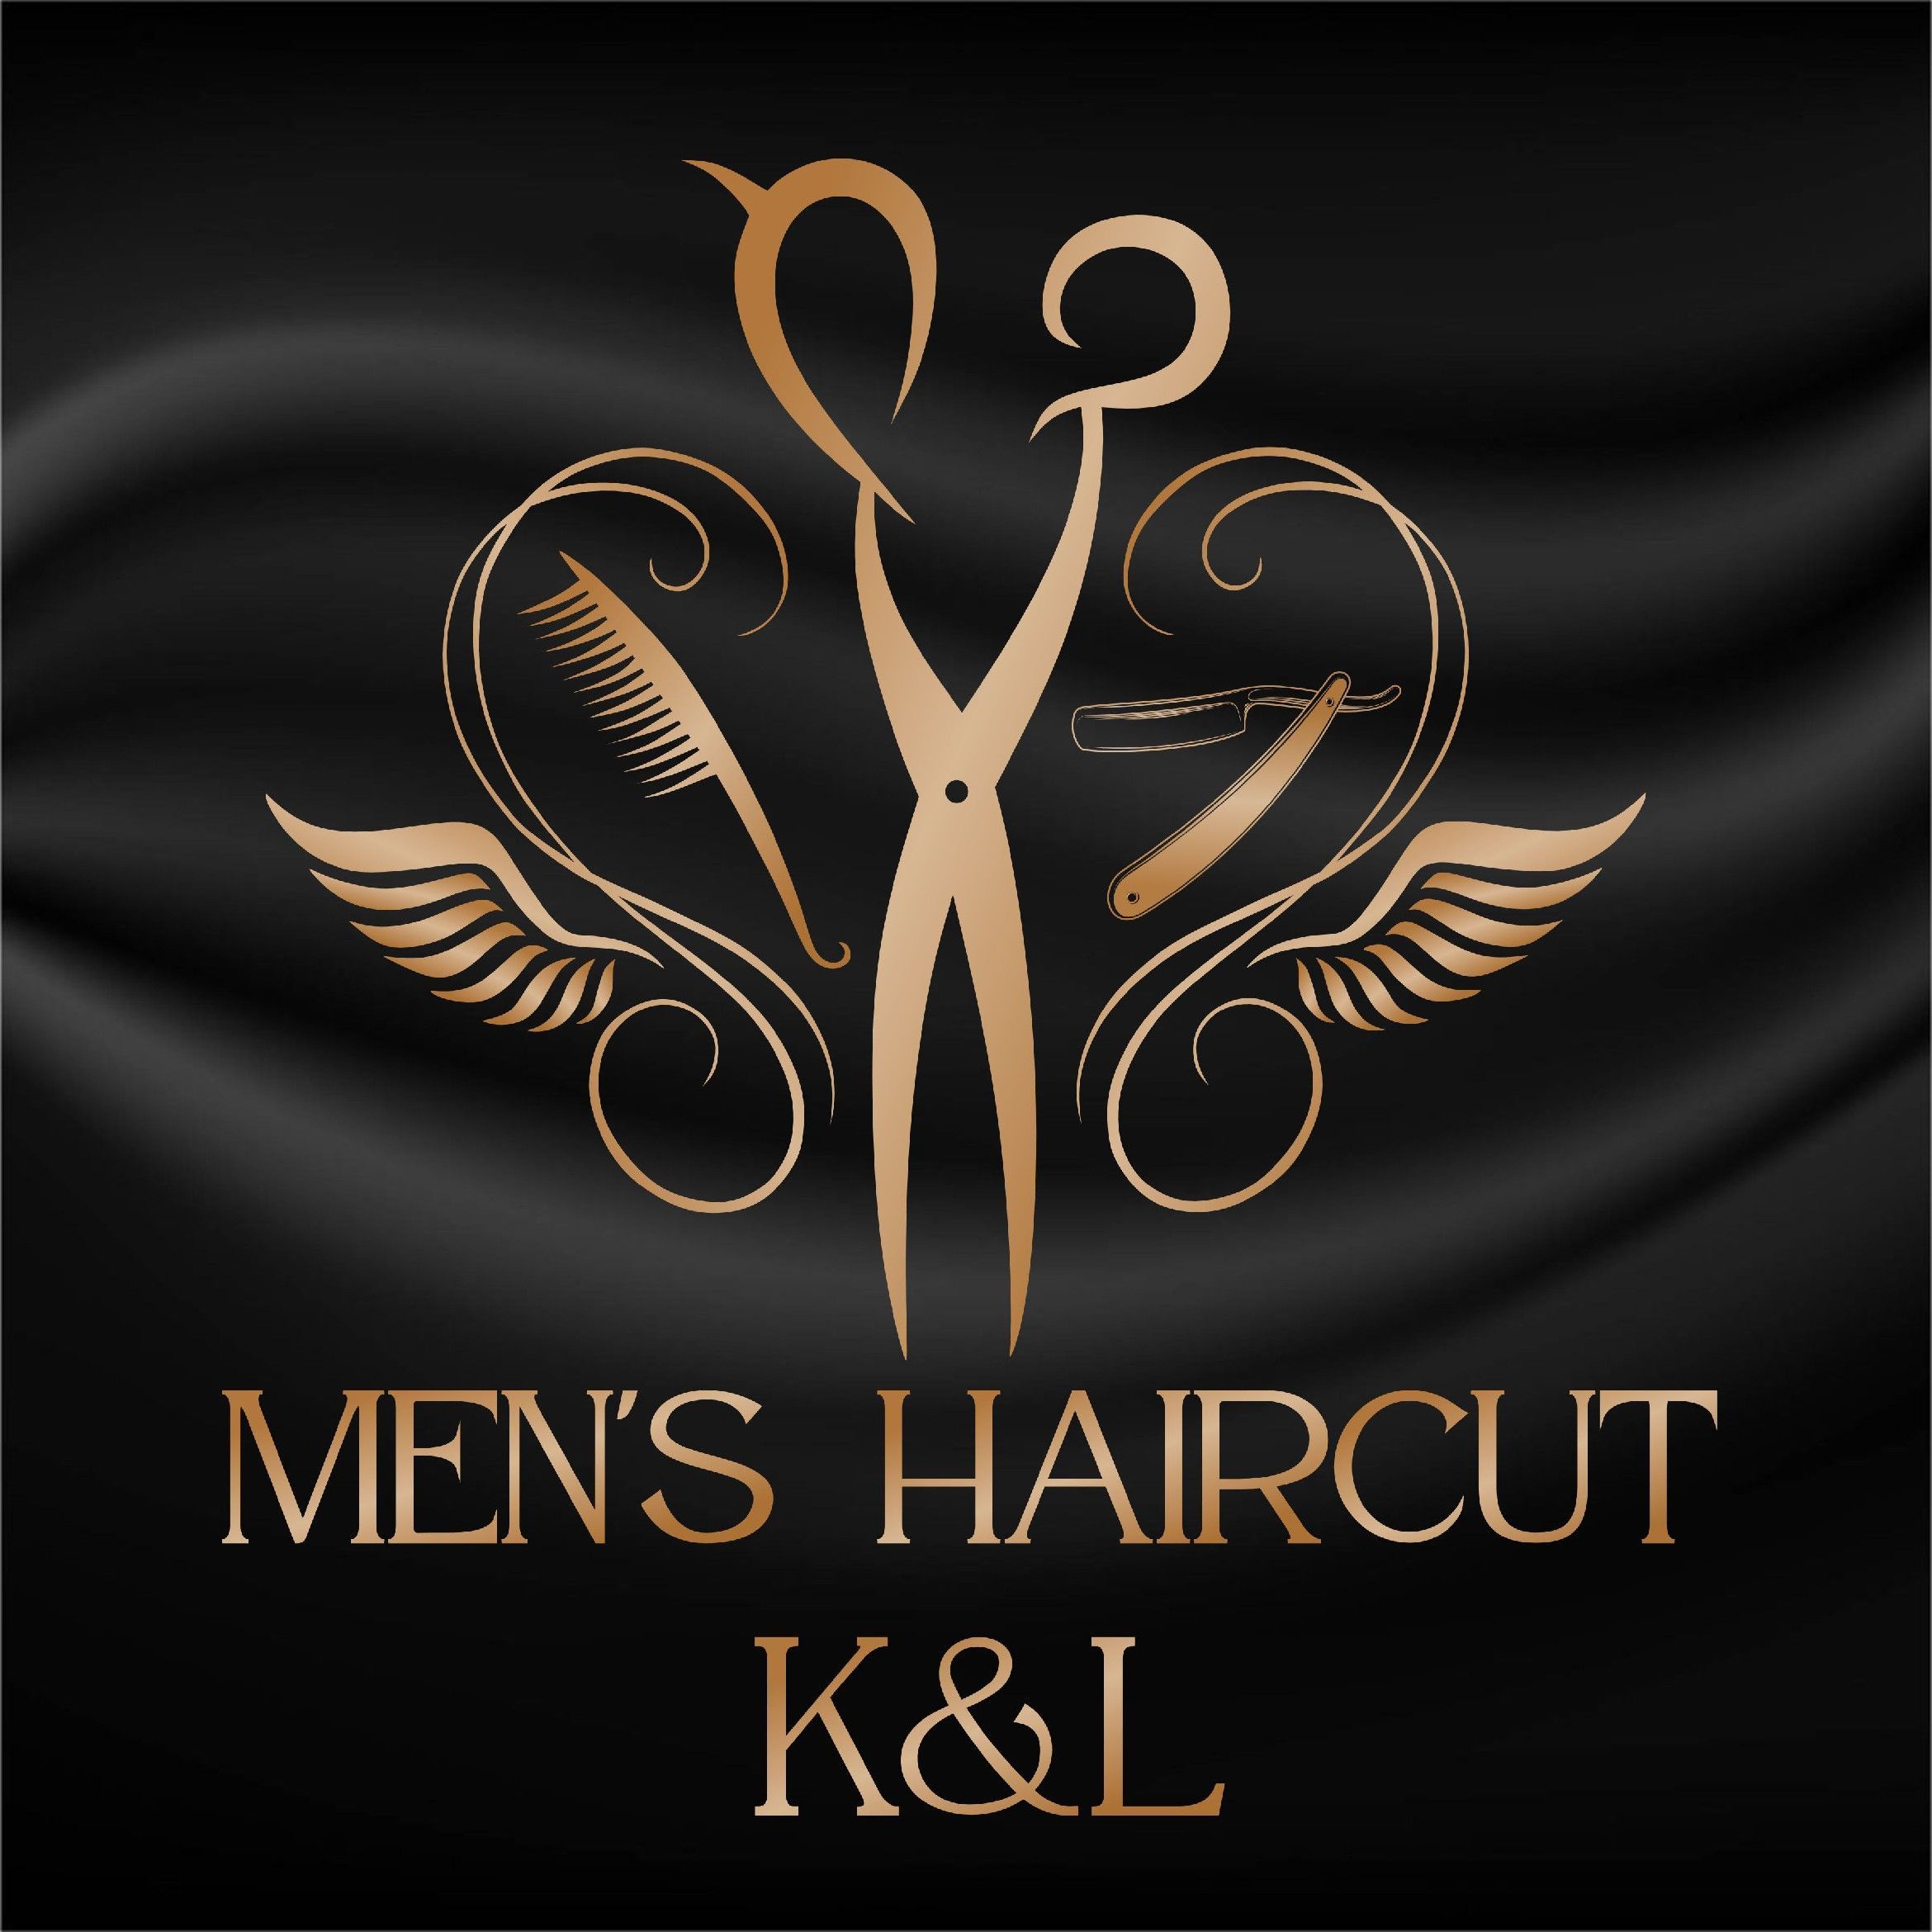 Strzyżenie Męskie Men's Haircut K&L, 3 Maja 22, Wejście do salonu KOKO Beauty Bar, 81-363, Gdynia